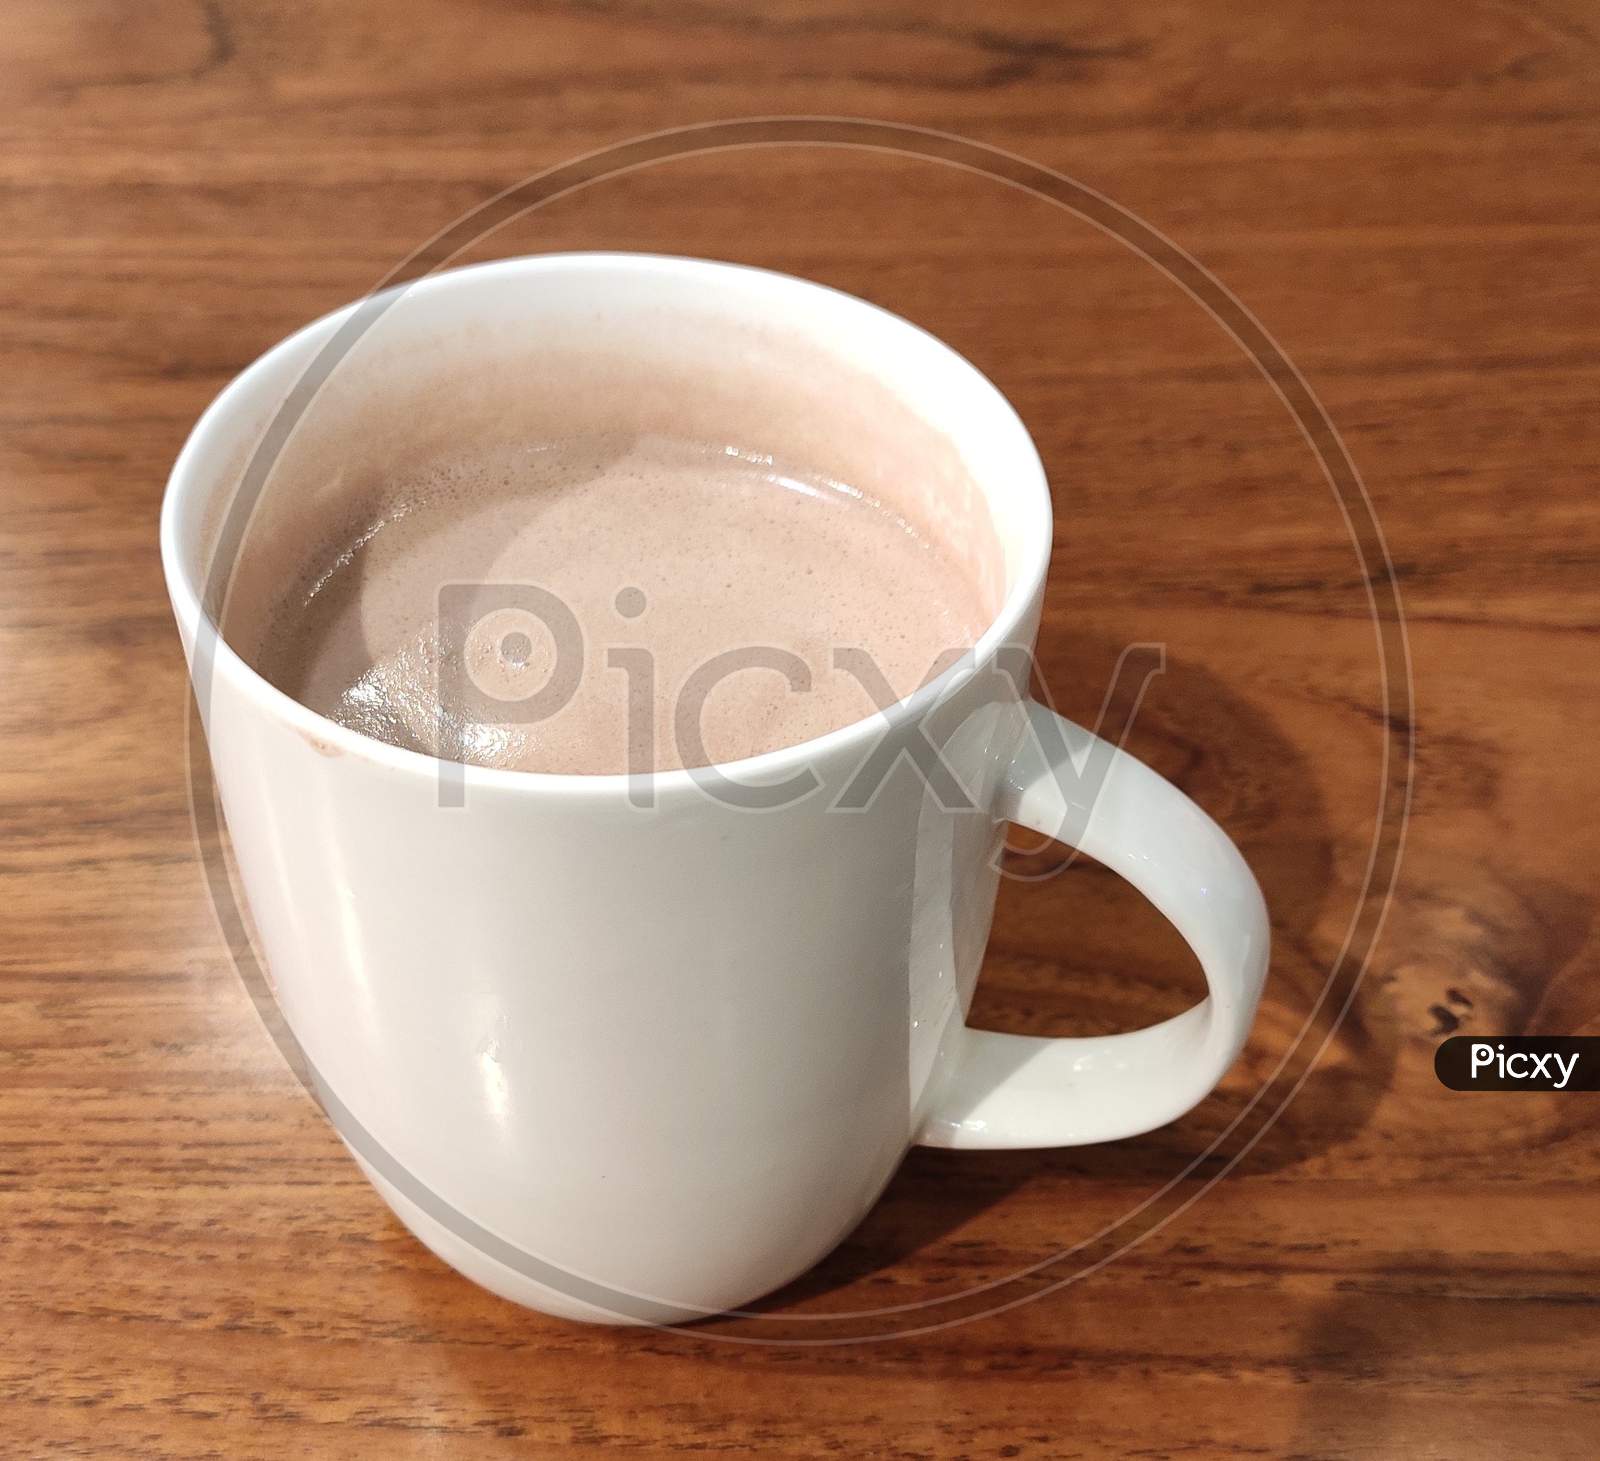 Coffee served in a beautiful ceramic mug